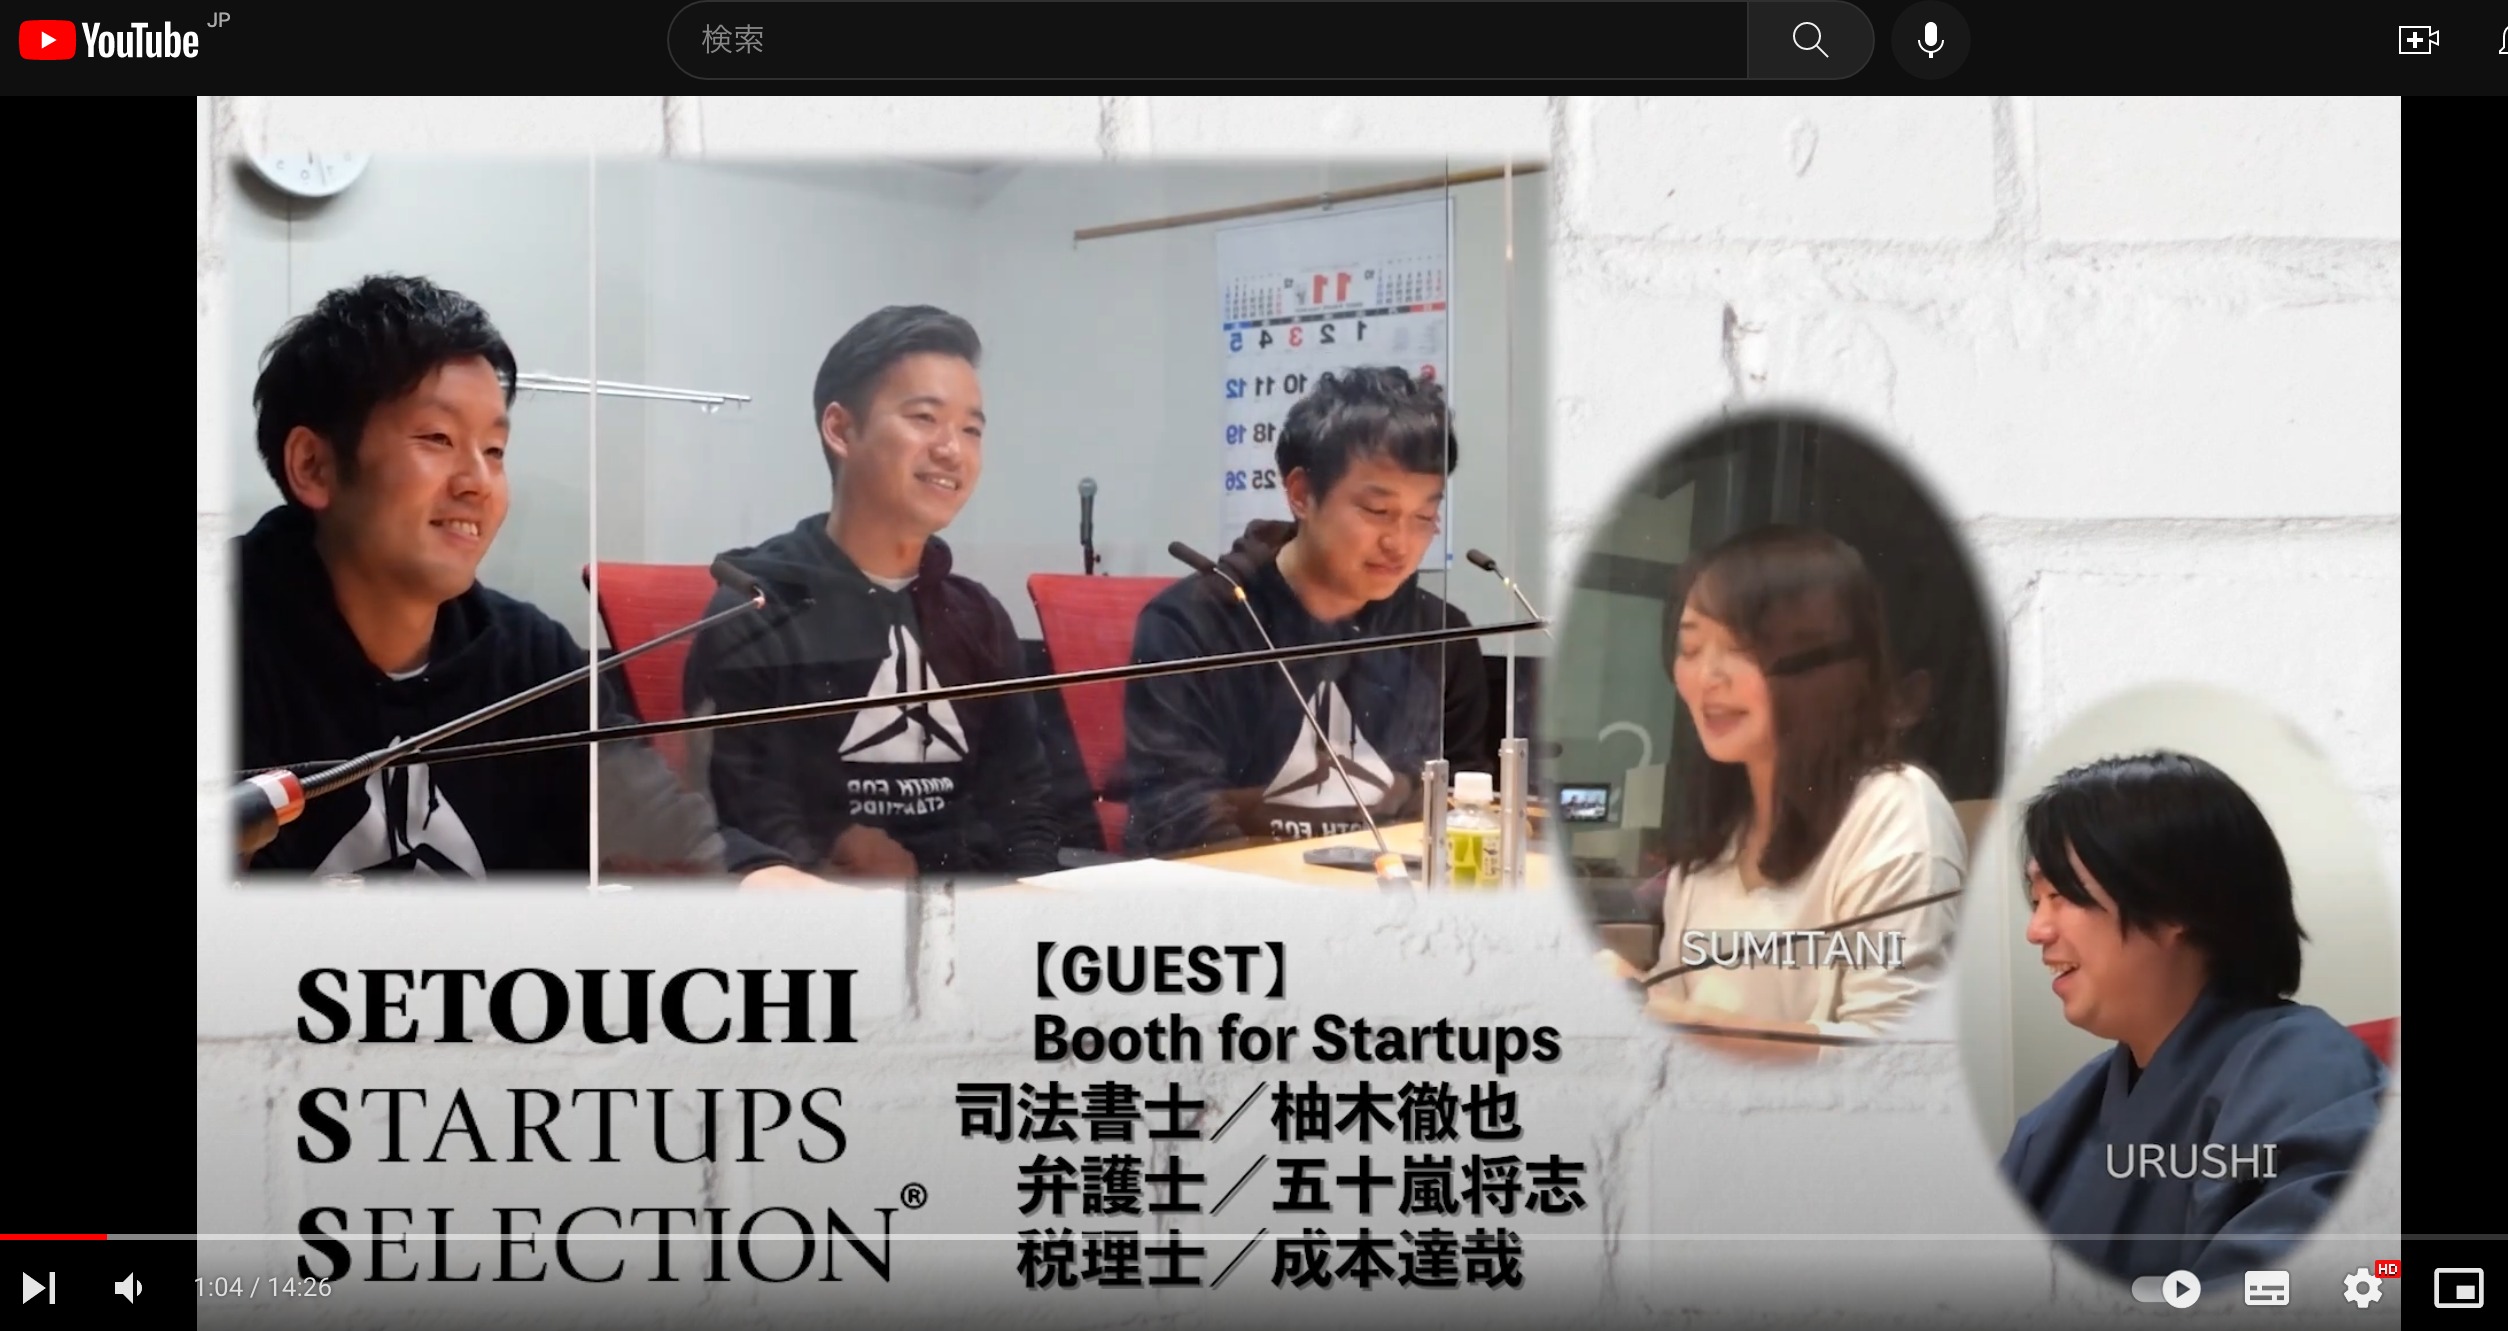 RCCラジオ”Setouchi Startups Selection” Youtube配信開始